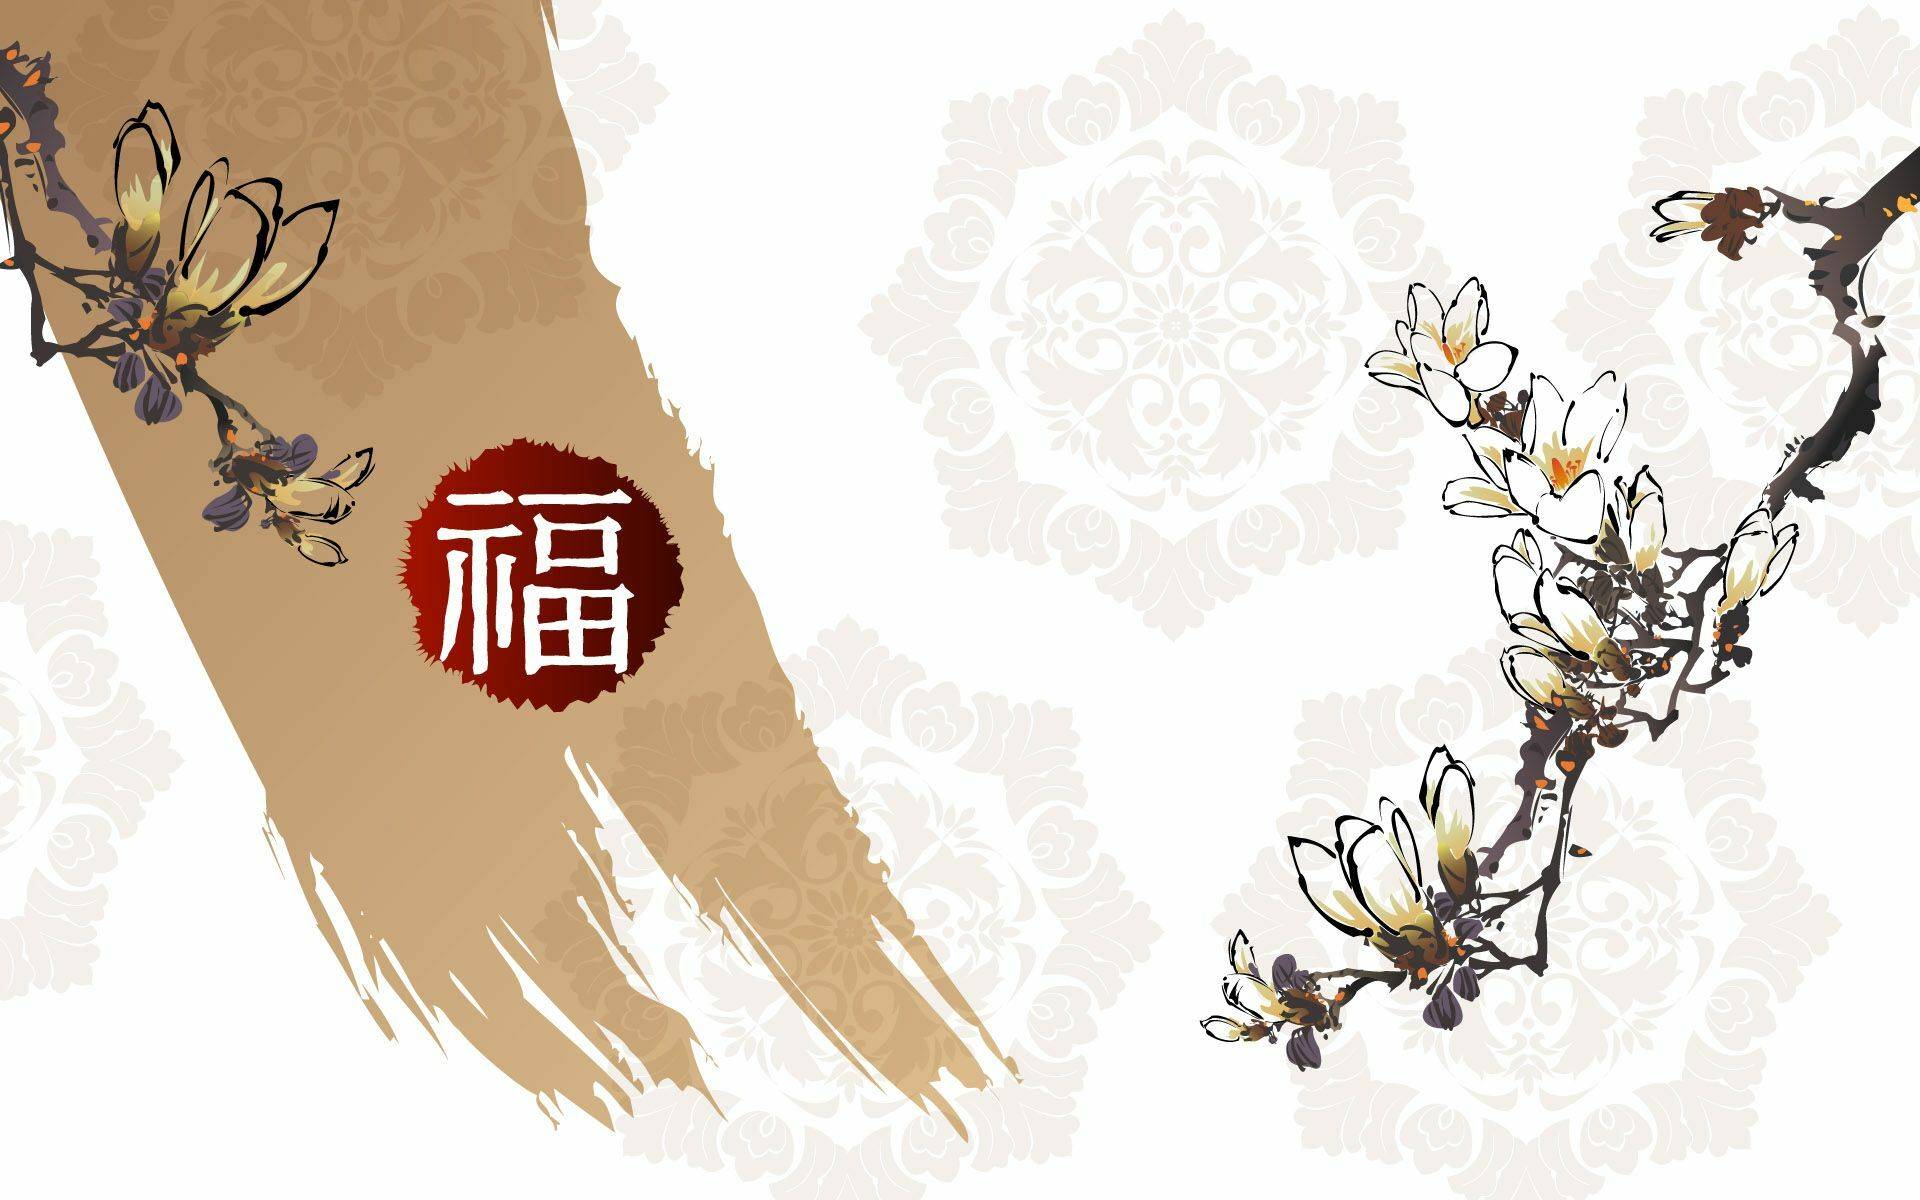 Китайский Новый Год wallpaper 44pcs [DOWNLOAD FREE]